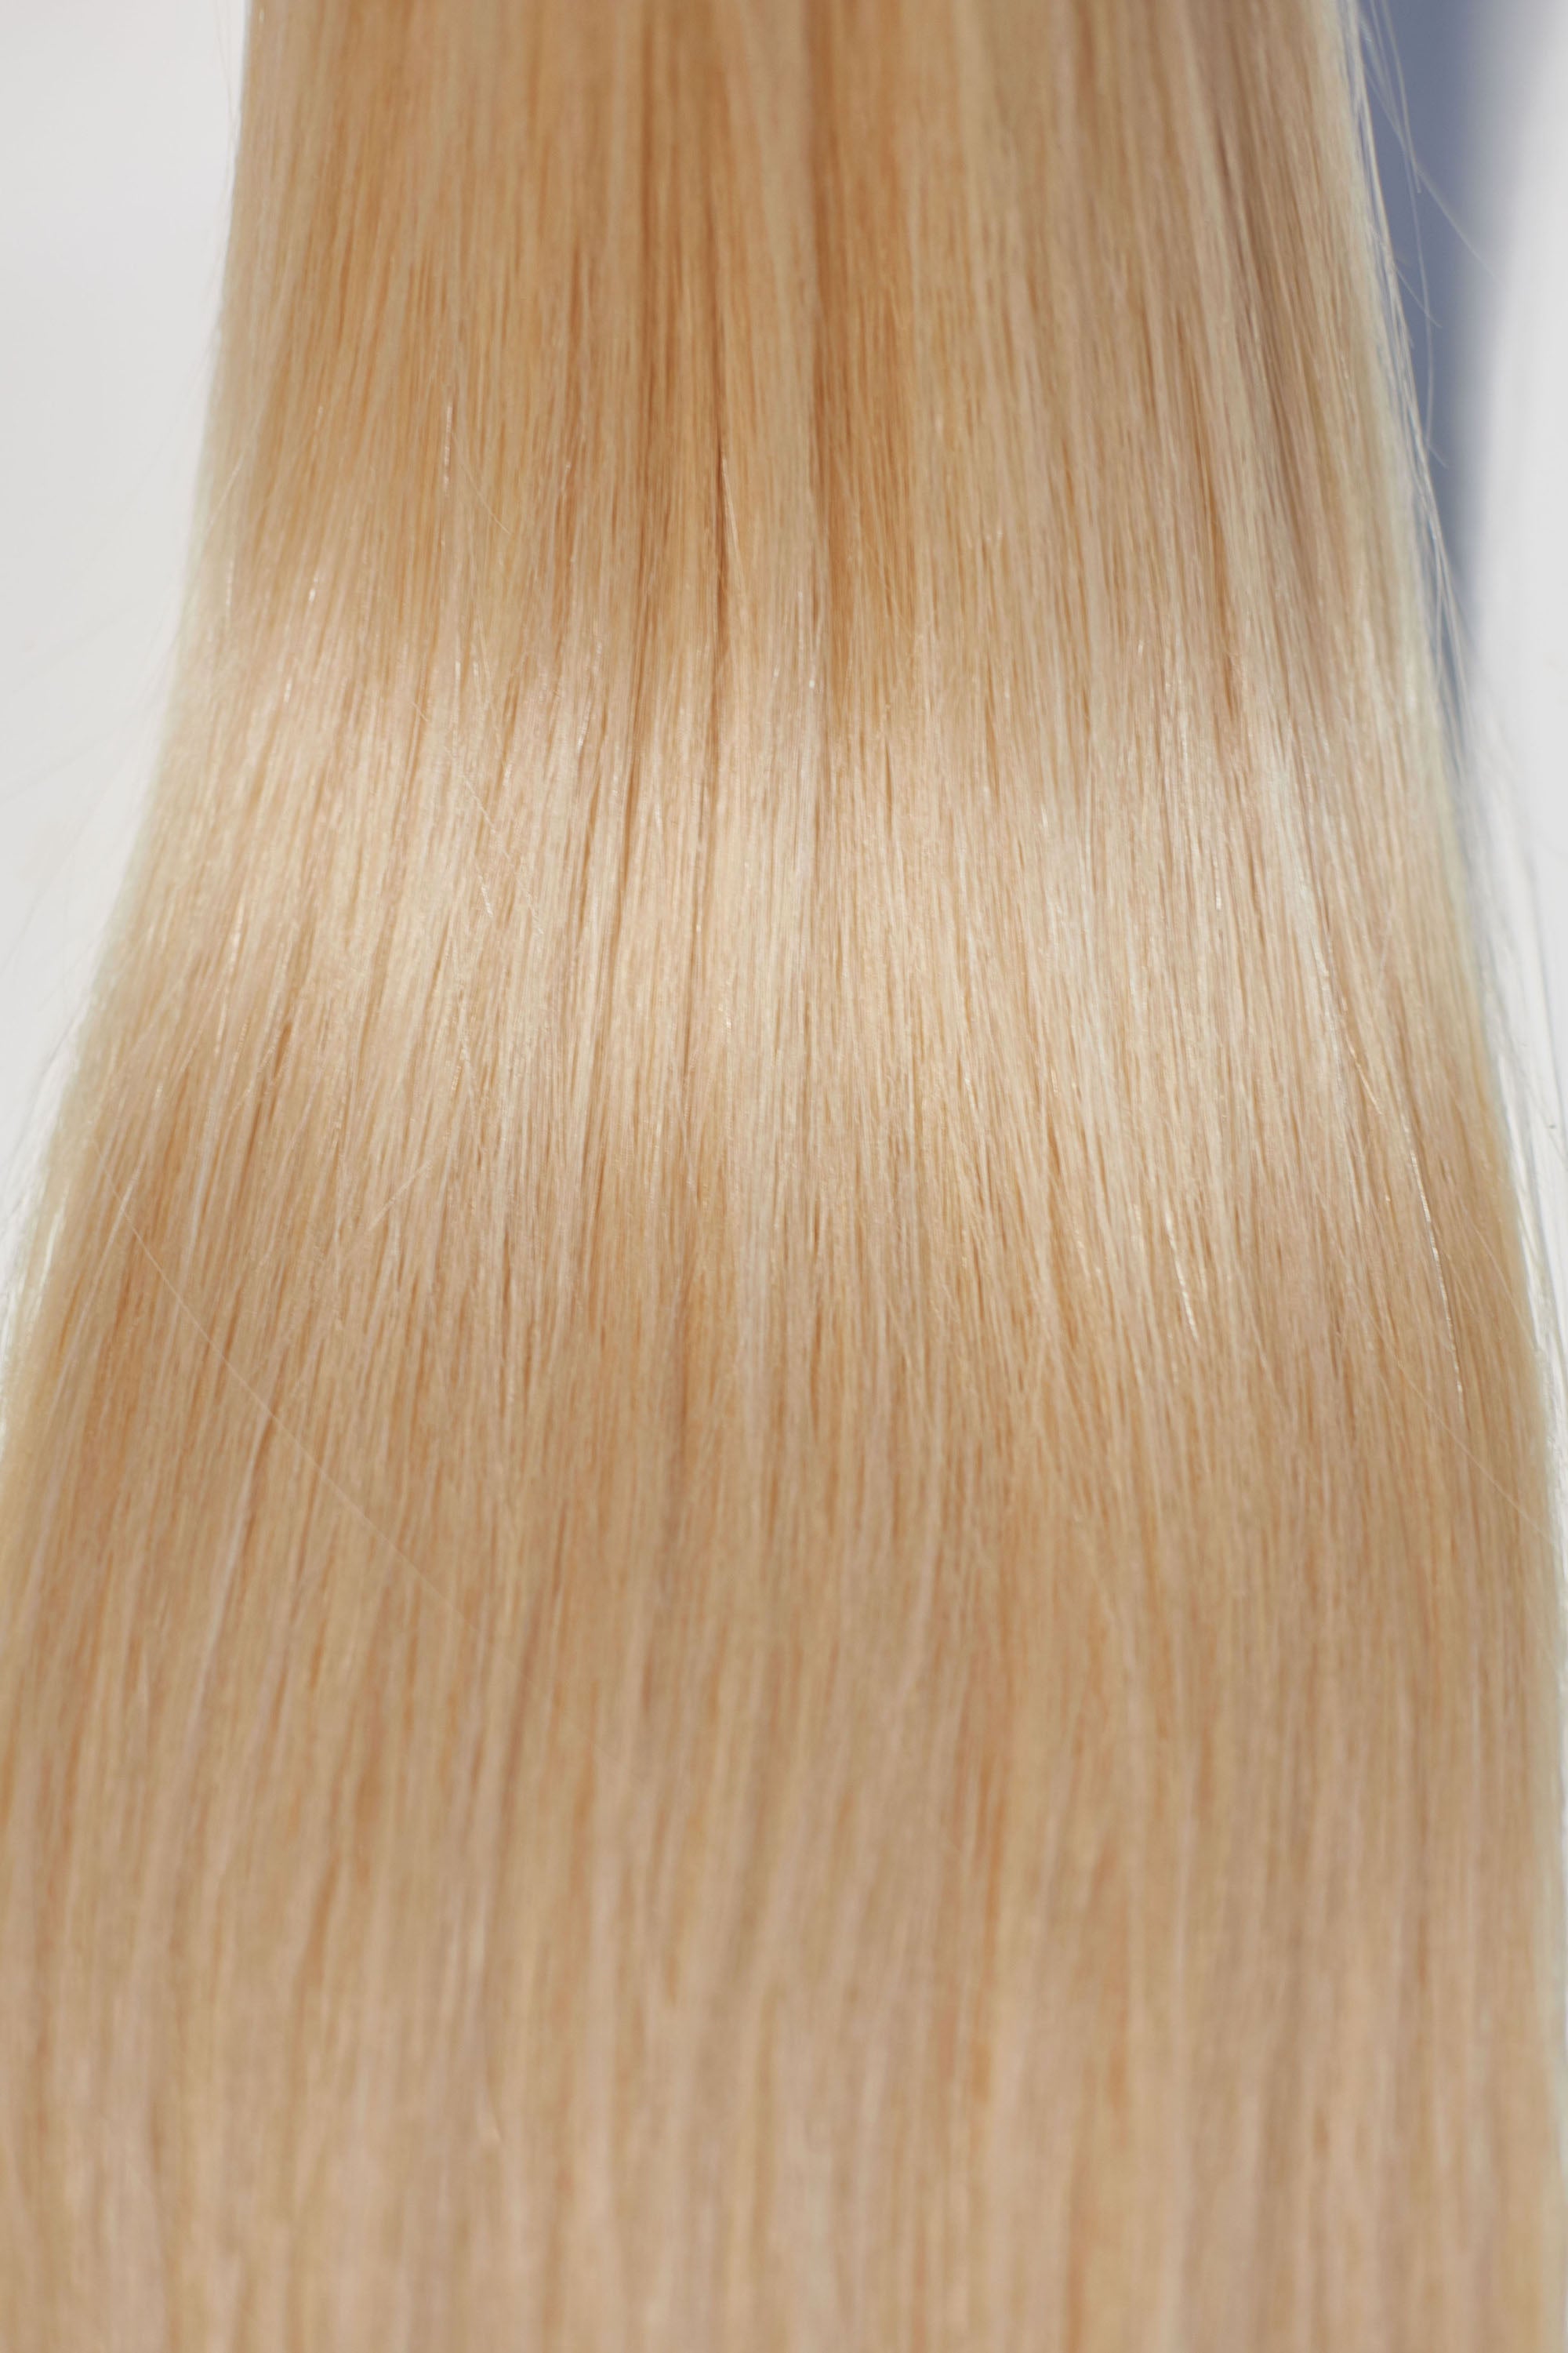 Behair professional Keratin Tip "Premium" 28" (70cm) Natural Straight Beach Blonde #613 - 25g (Micro - 0.5g each pcs) hair extensions